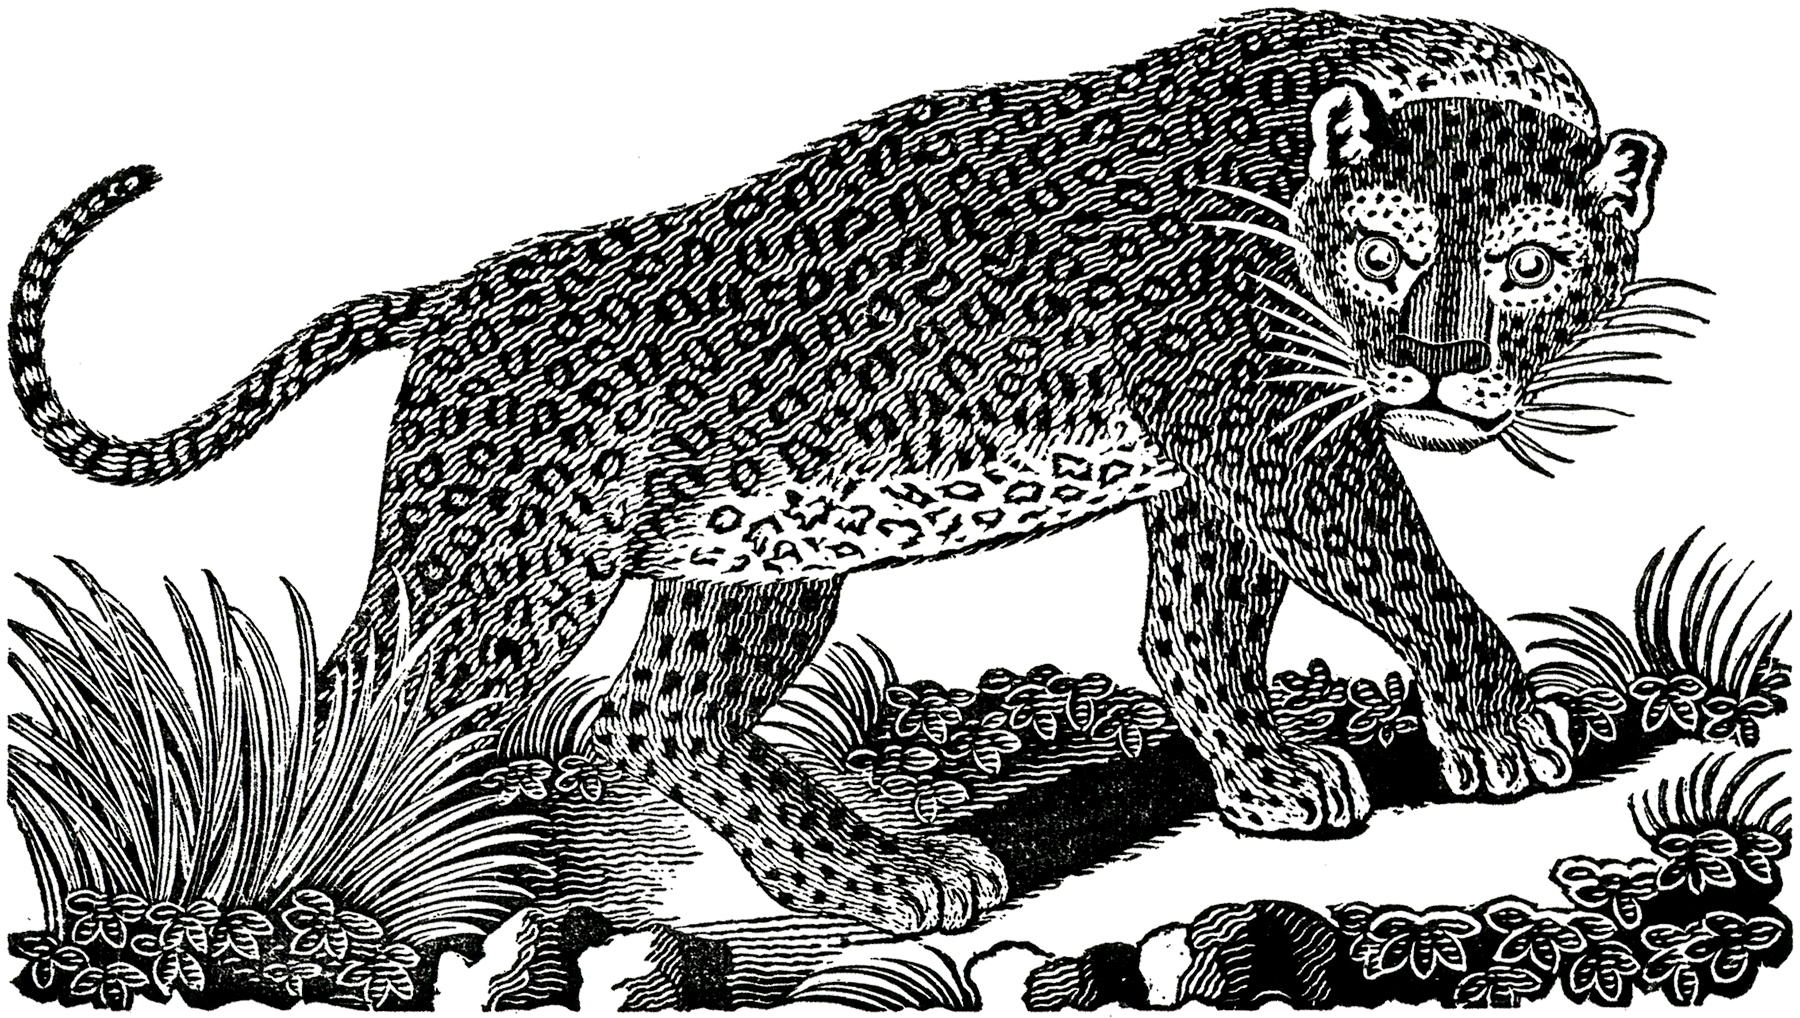 Public Domain Leopard Image